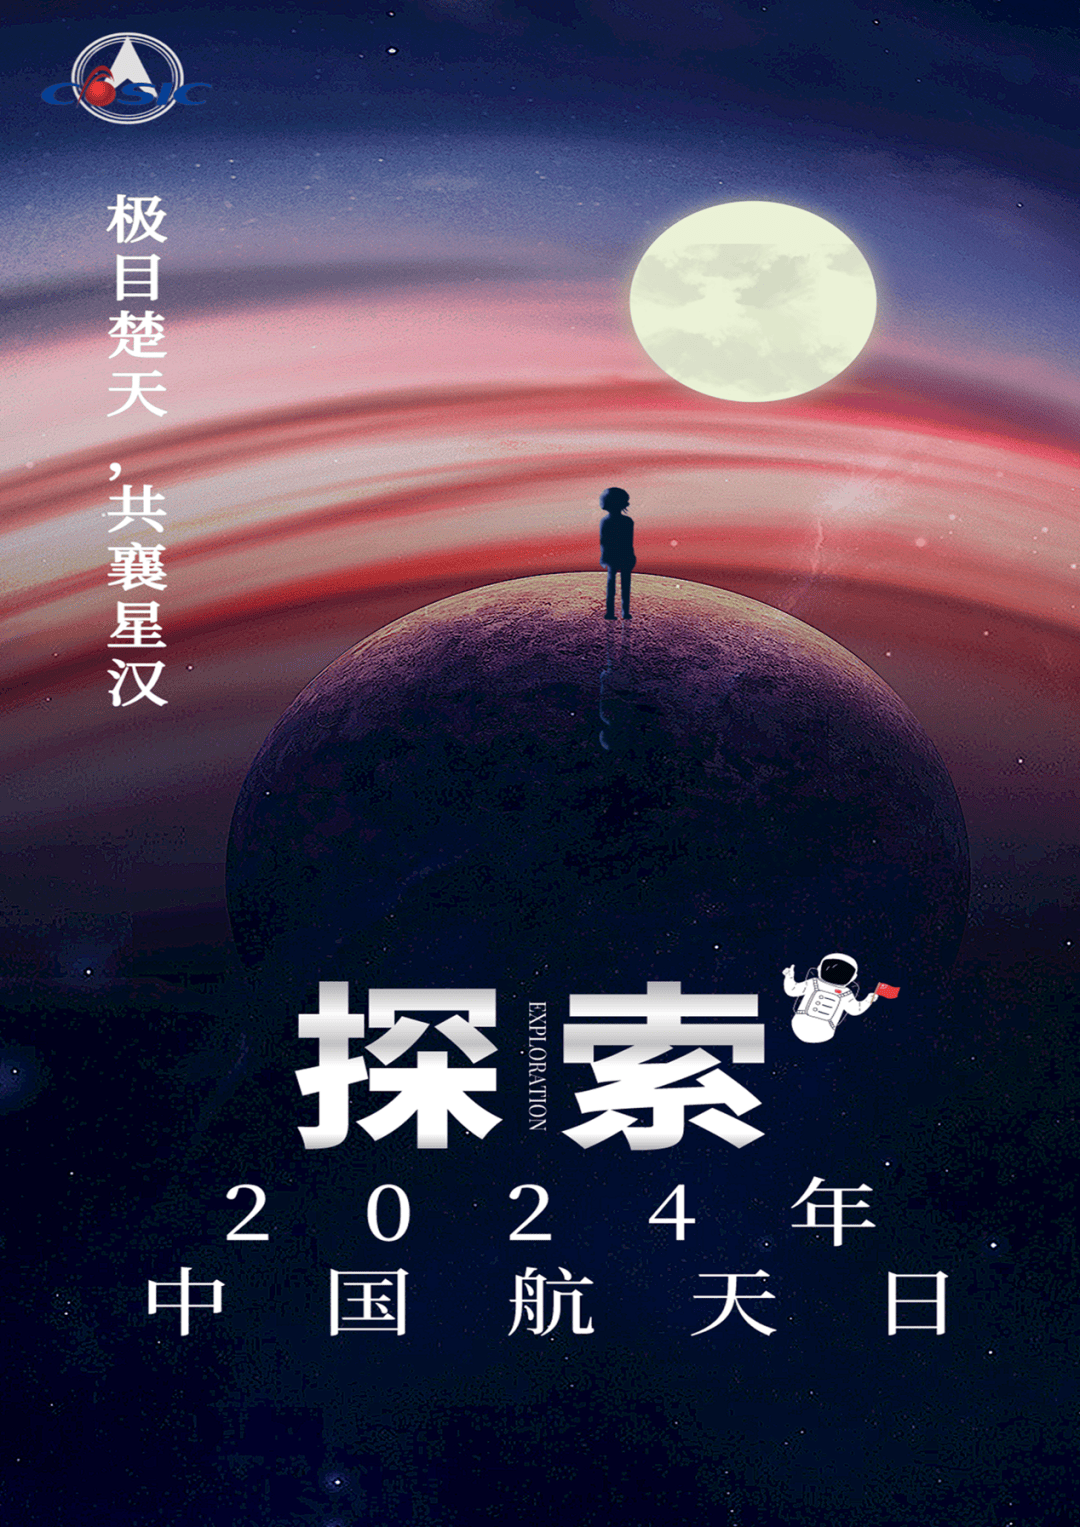 2019年中国航天日海报图片